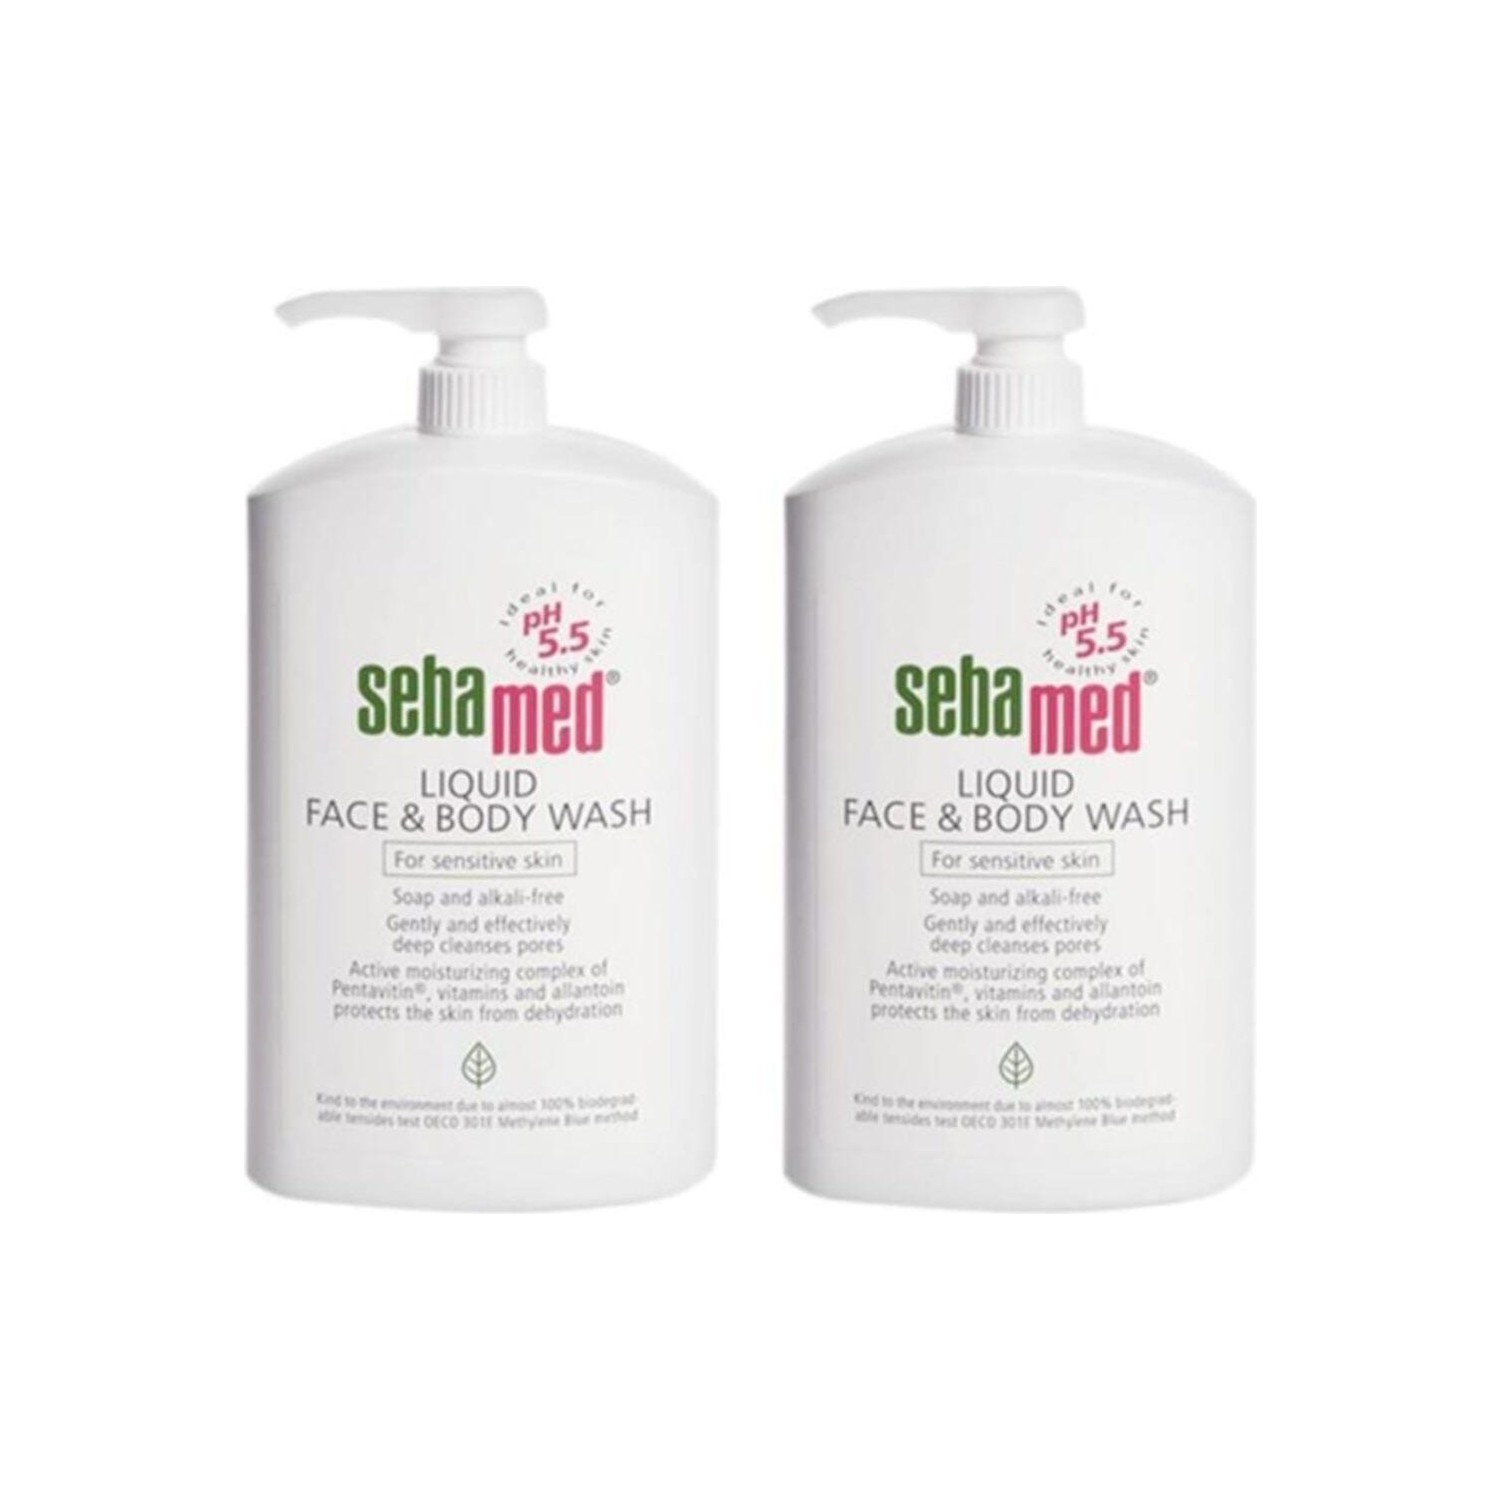 Очищающий гель Sebamed Liquid для лица и тела, 2 флакона по 1000 мл givenchy mister face gel 30 мл без цвета